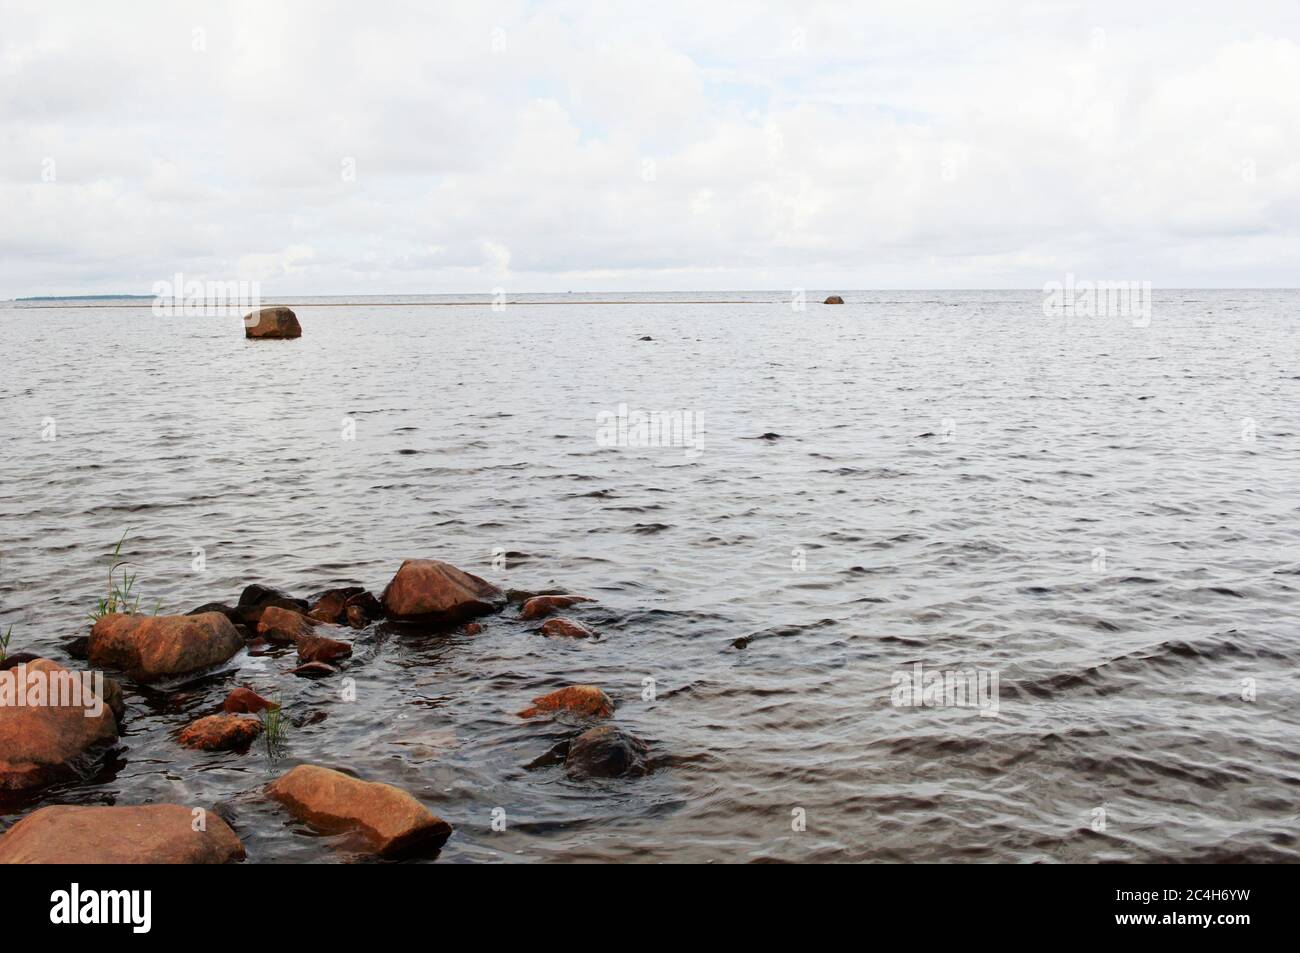 Les bancs de sable de Kalajoki dans la baie Bothnian en Finlande Banque D'Images